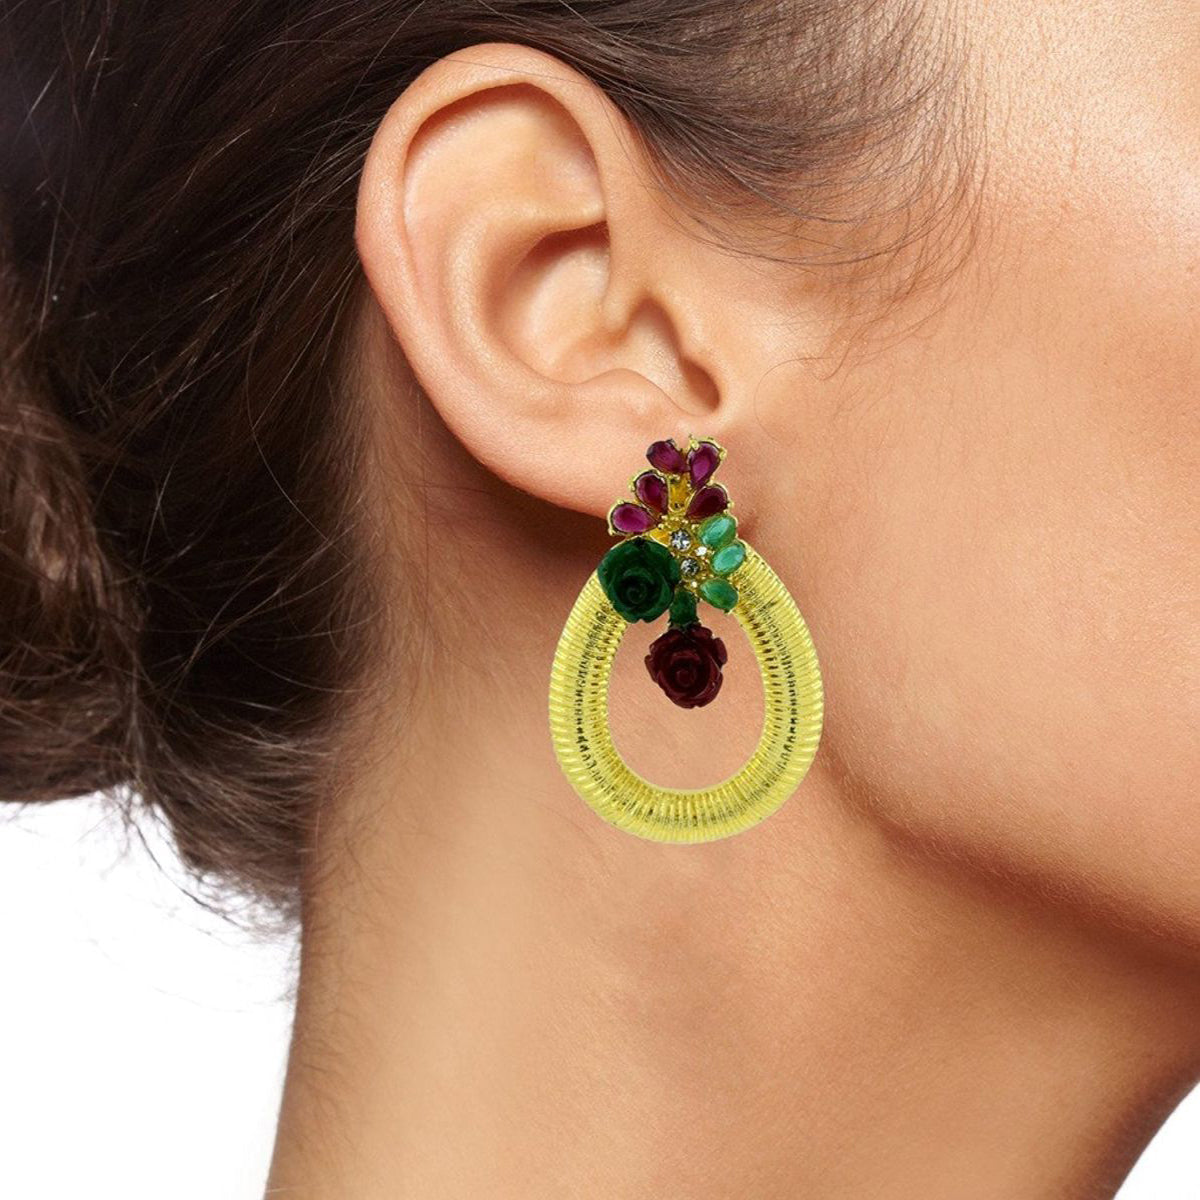 Designer Flower Gold American Diamond Red Green Earring For Women